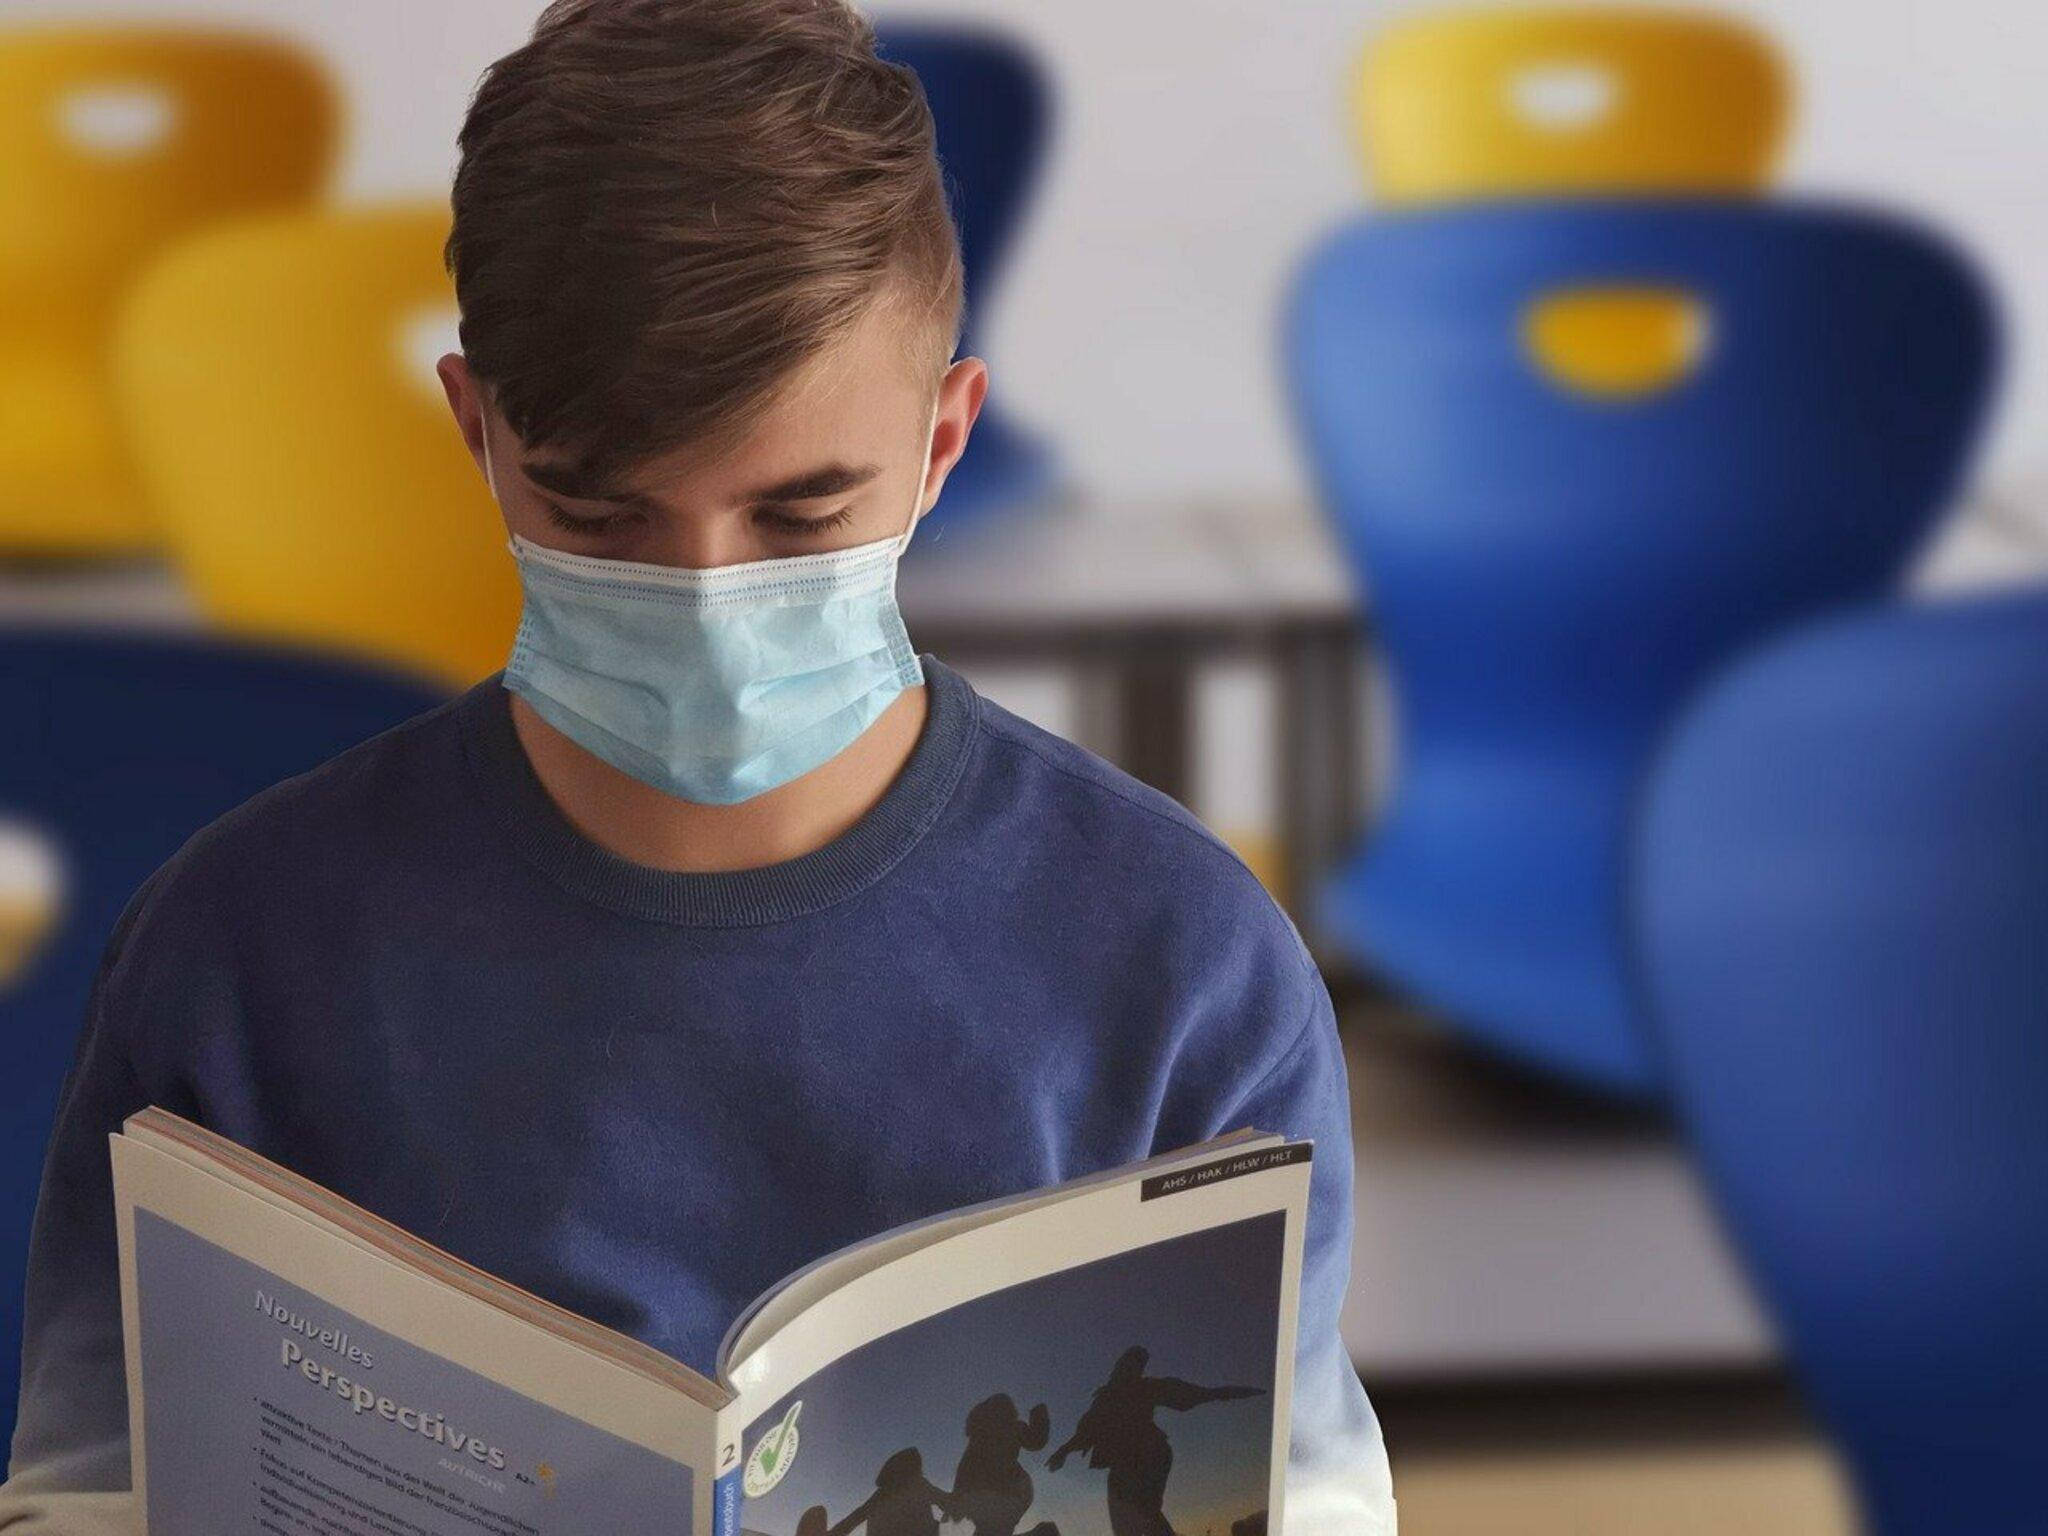 Діти частіше хворіють на коронавірус: як вберегти учнів від зараження в школі - Україна новини - Освіта